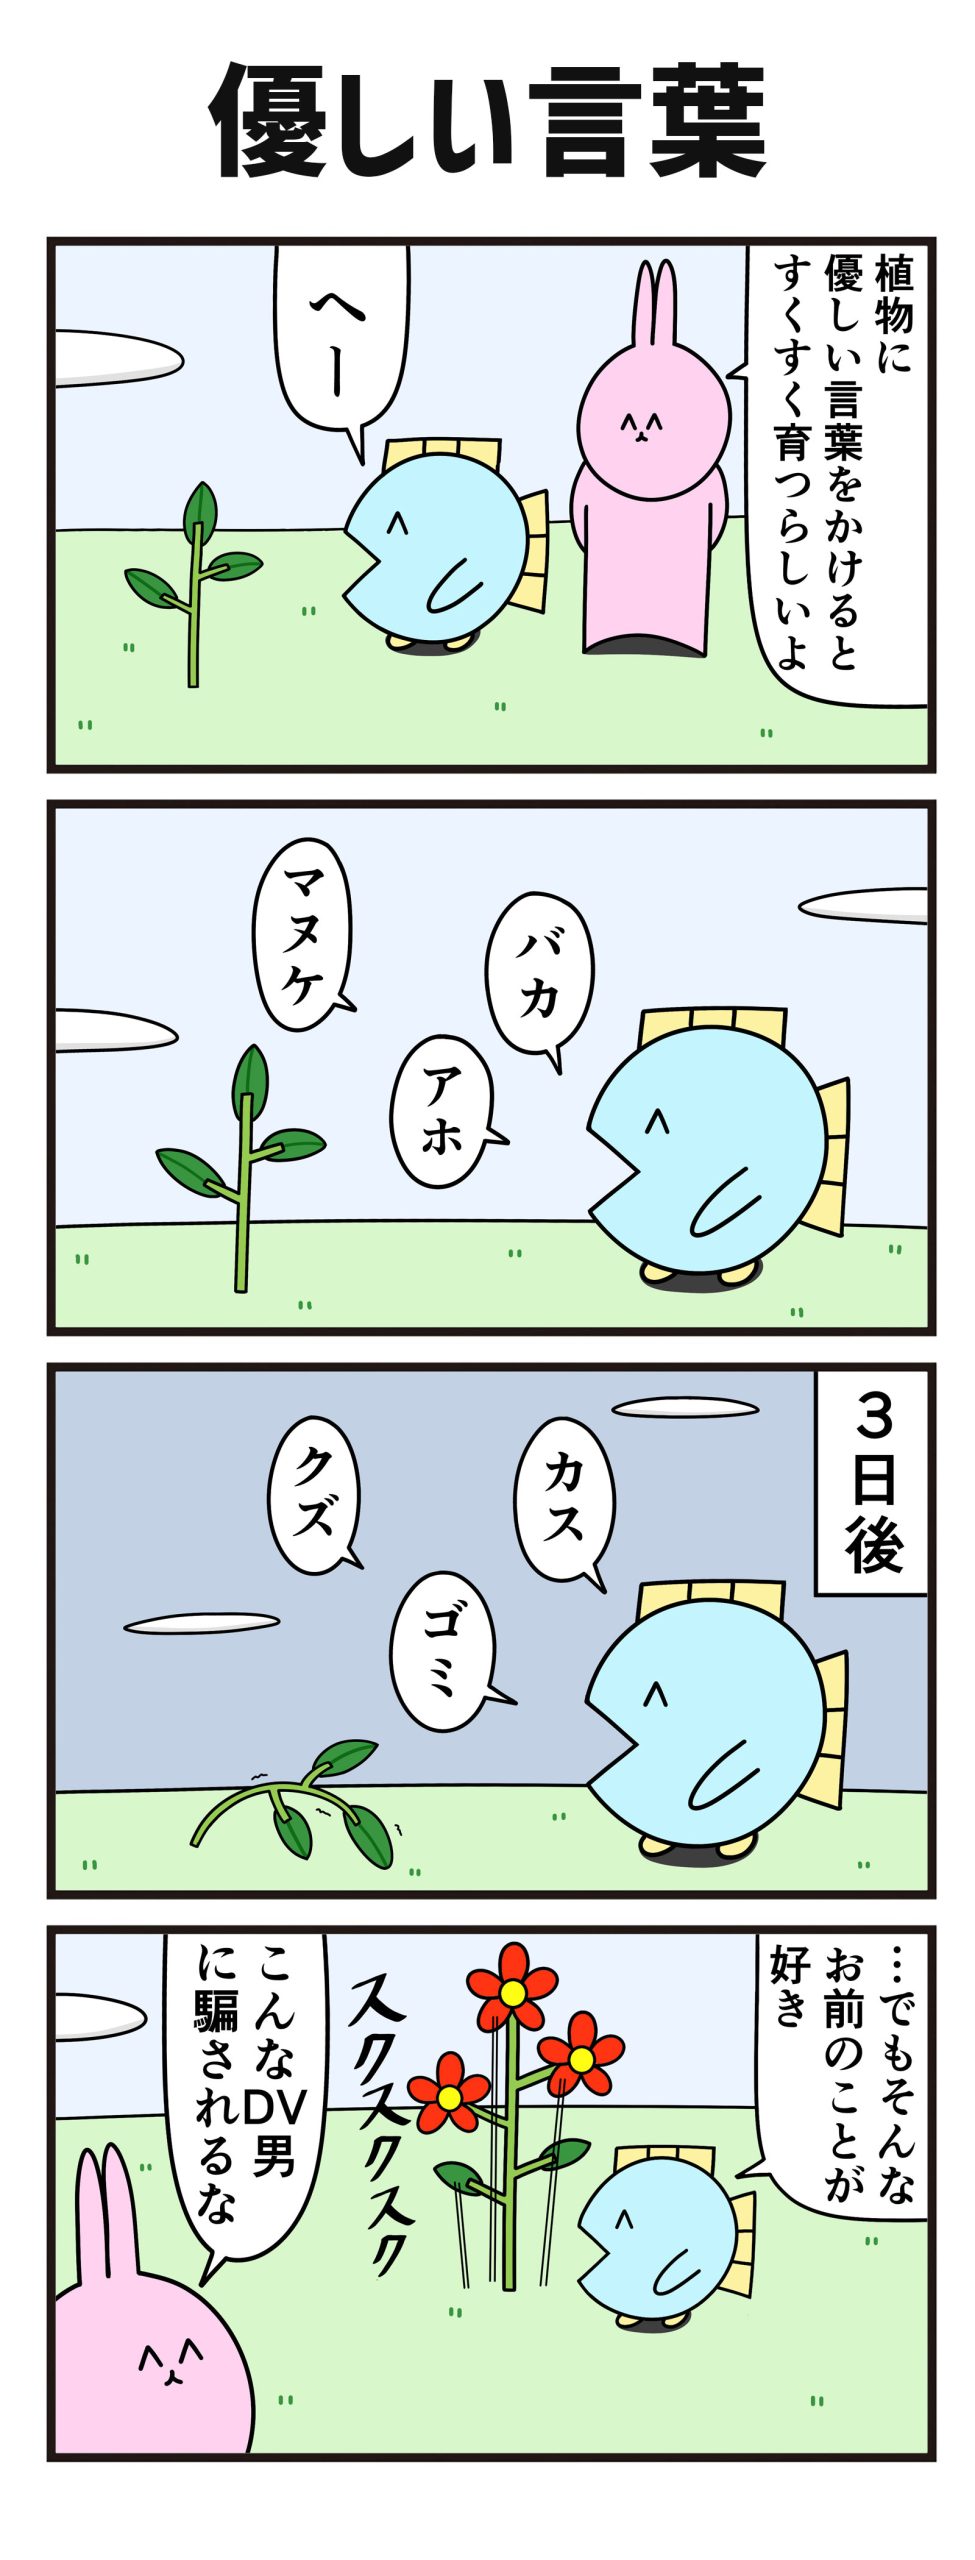 【ニョペ茄子】4コマ漫画「優しい言葉」